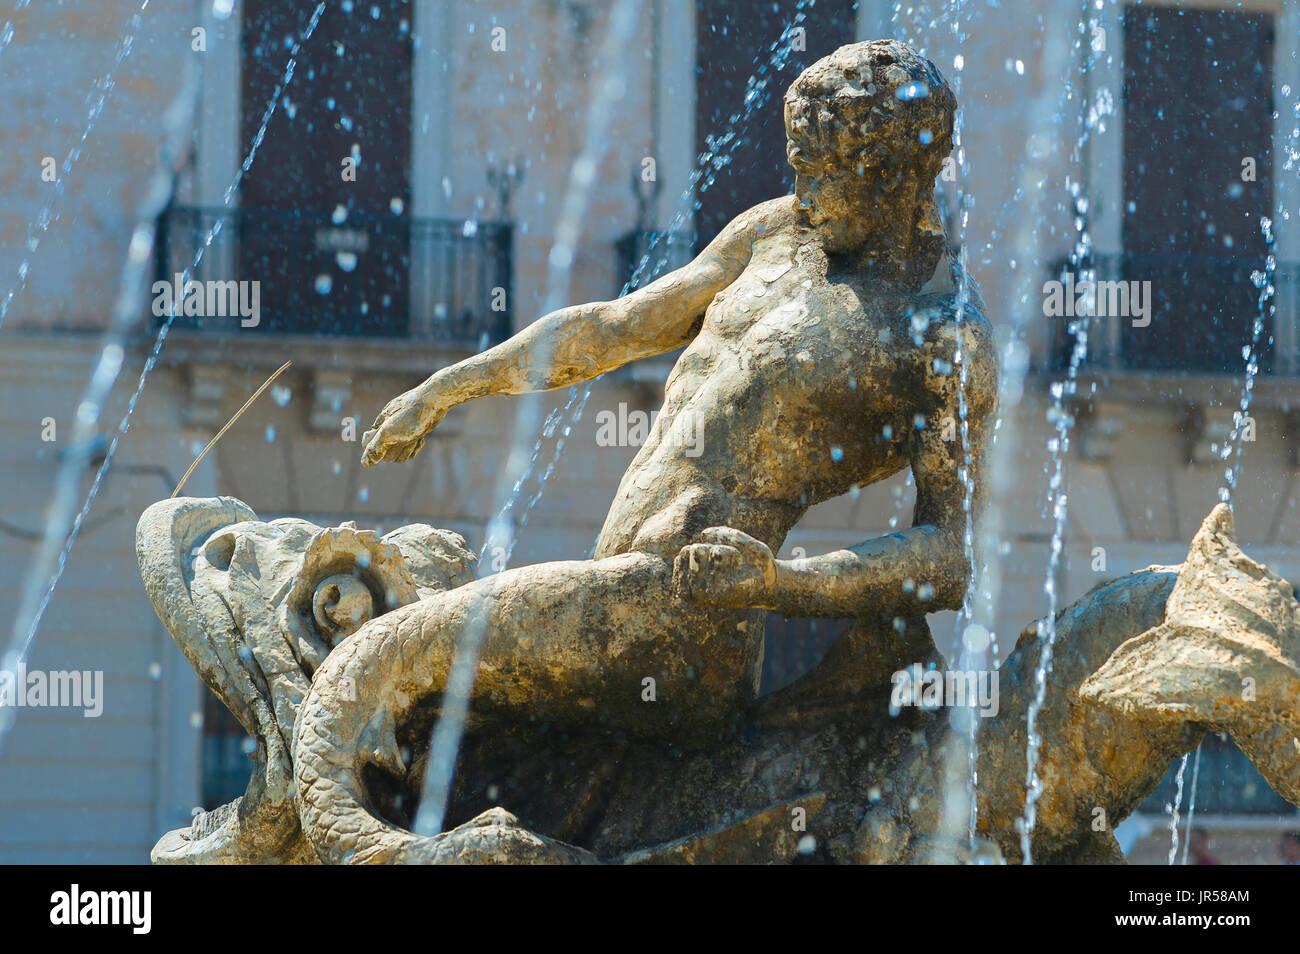 Sicile piazza, détail d'une figure mythologique dans l'Artémis Fontaine de la Piazza Archimede, Île d'Ortigia, Syracuse Syracuse (Sicile). Banque D'Images